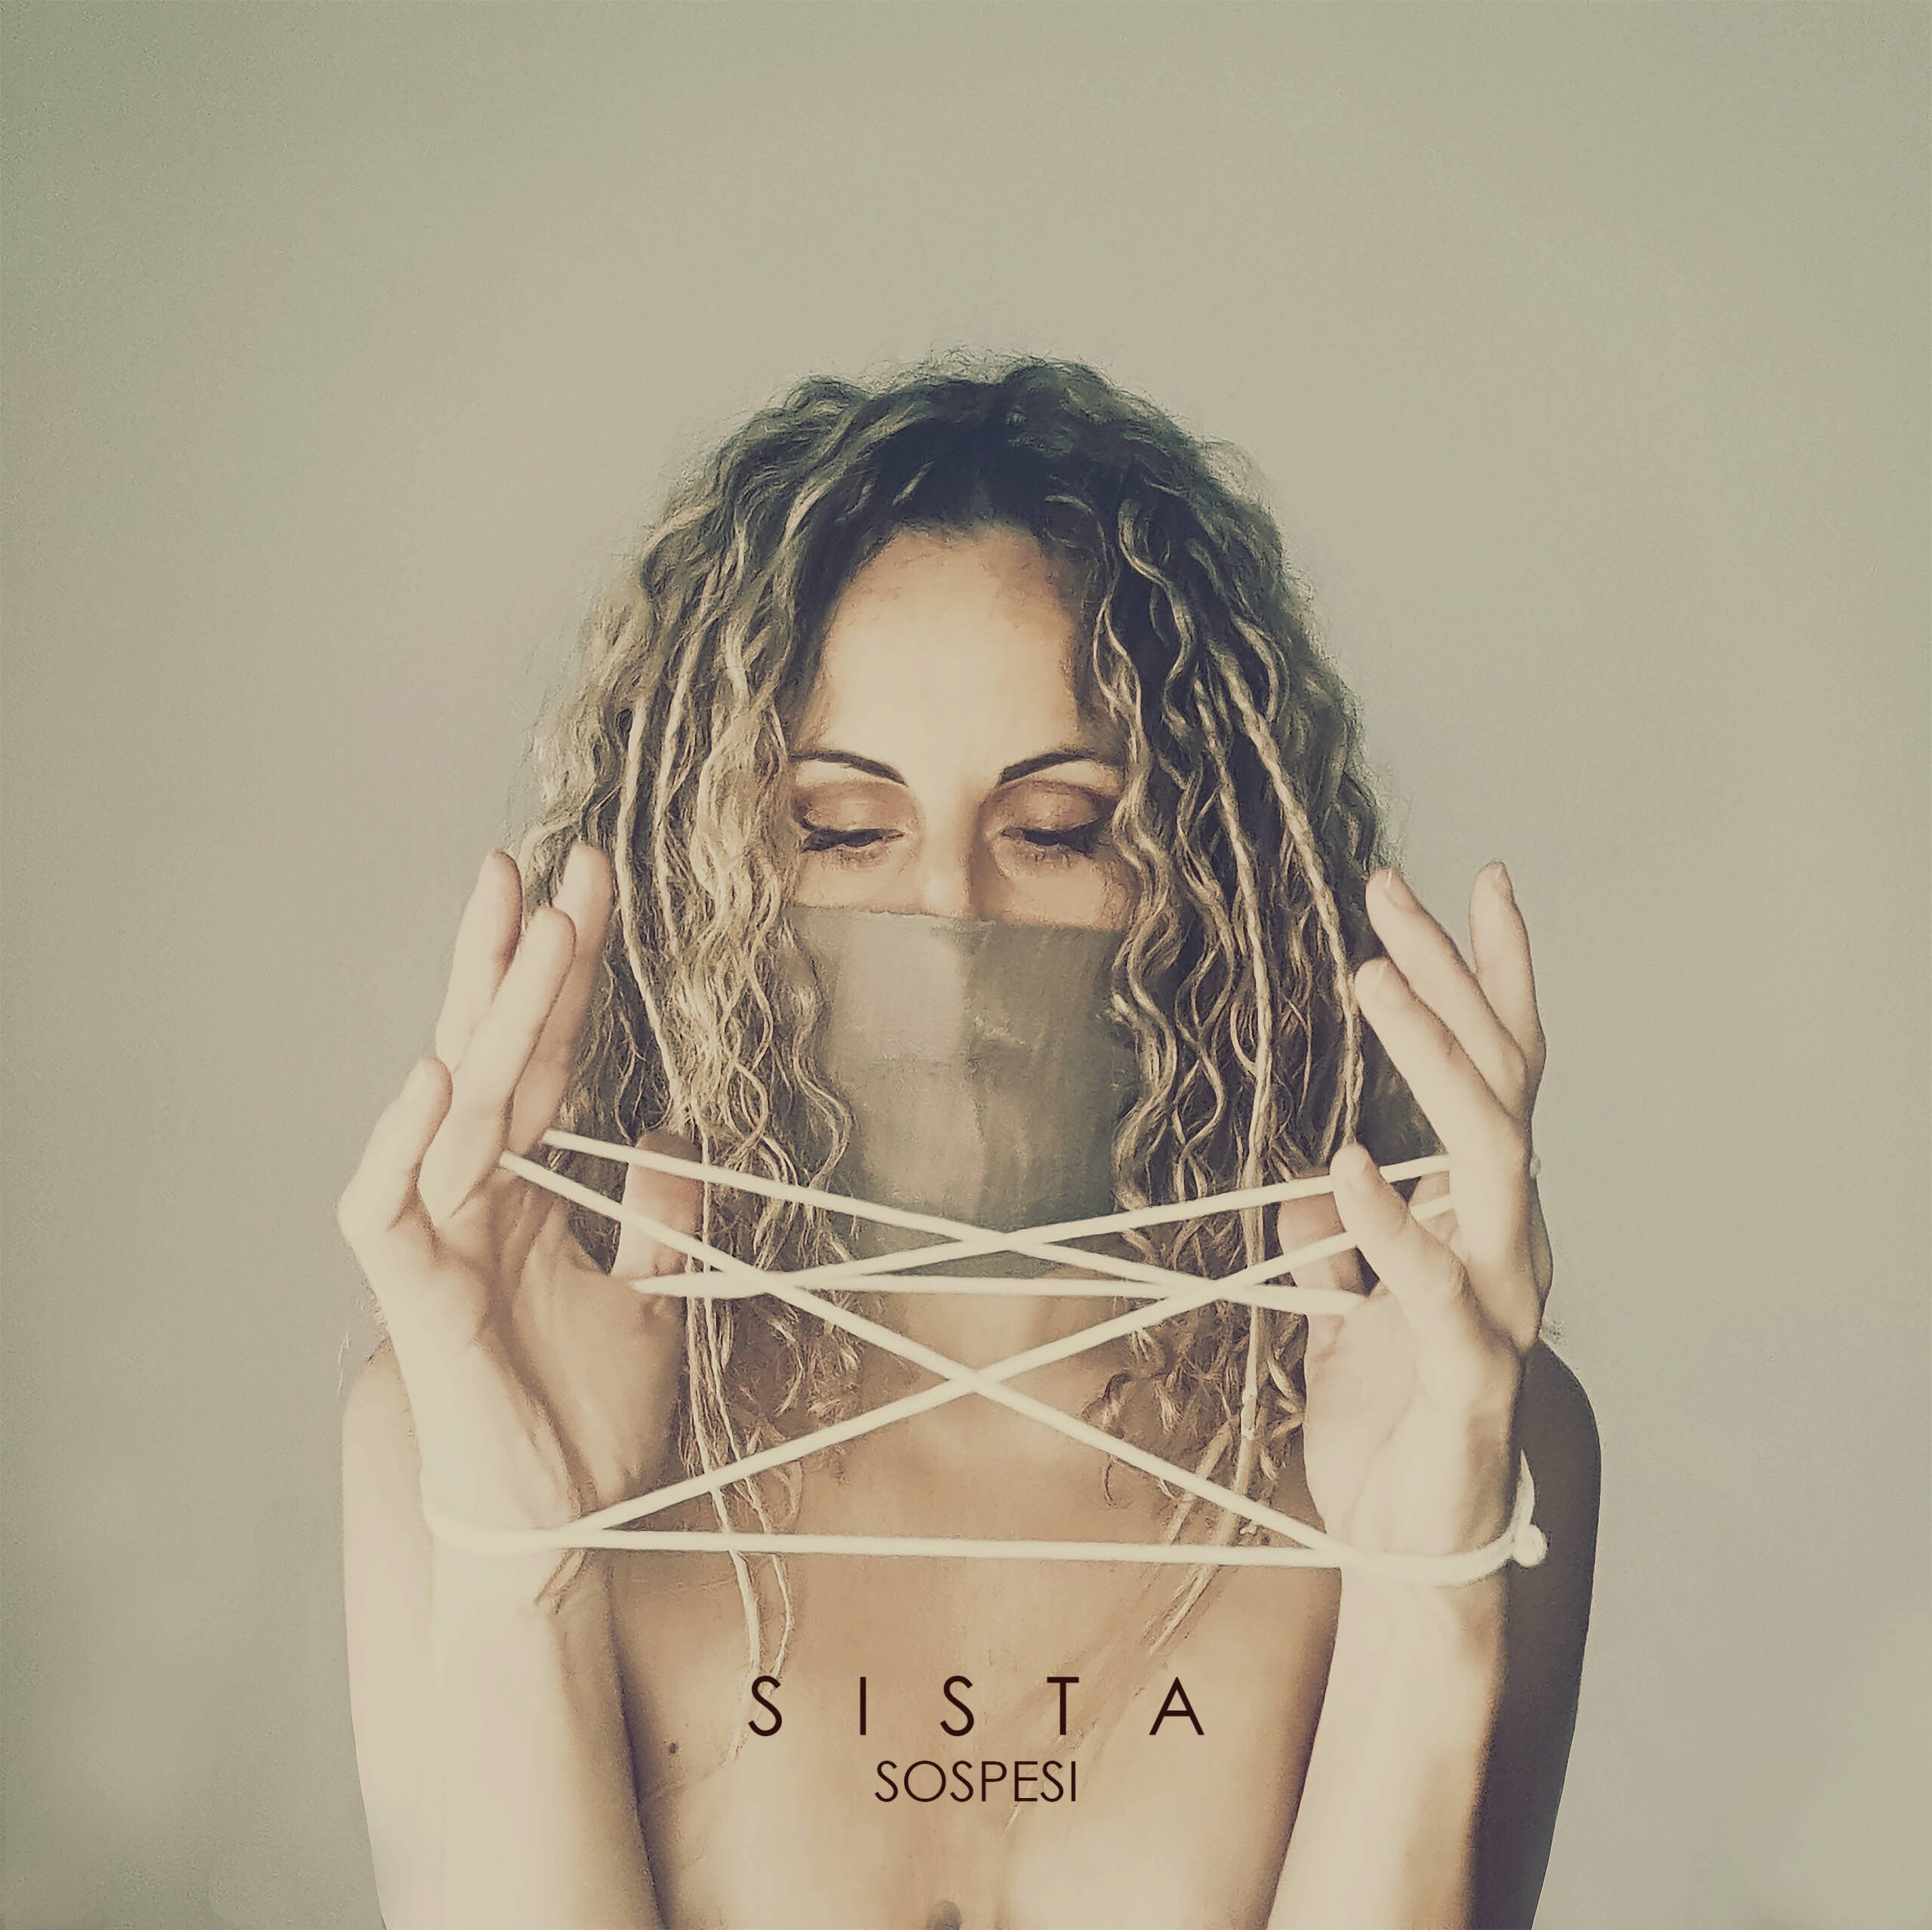 ‘Sospesi’, il primo singolo in italiano di Sista. Da domani in rotazione radiofonica